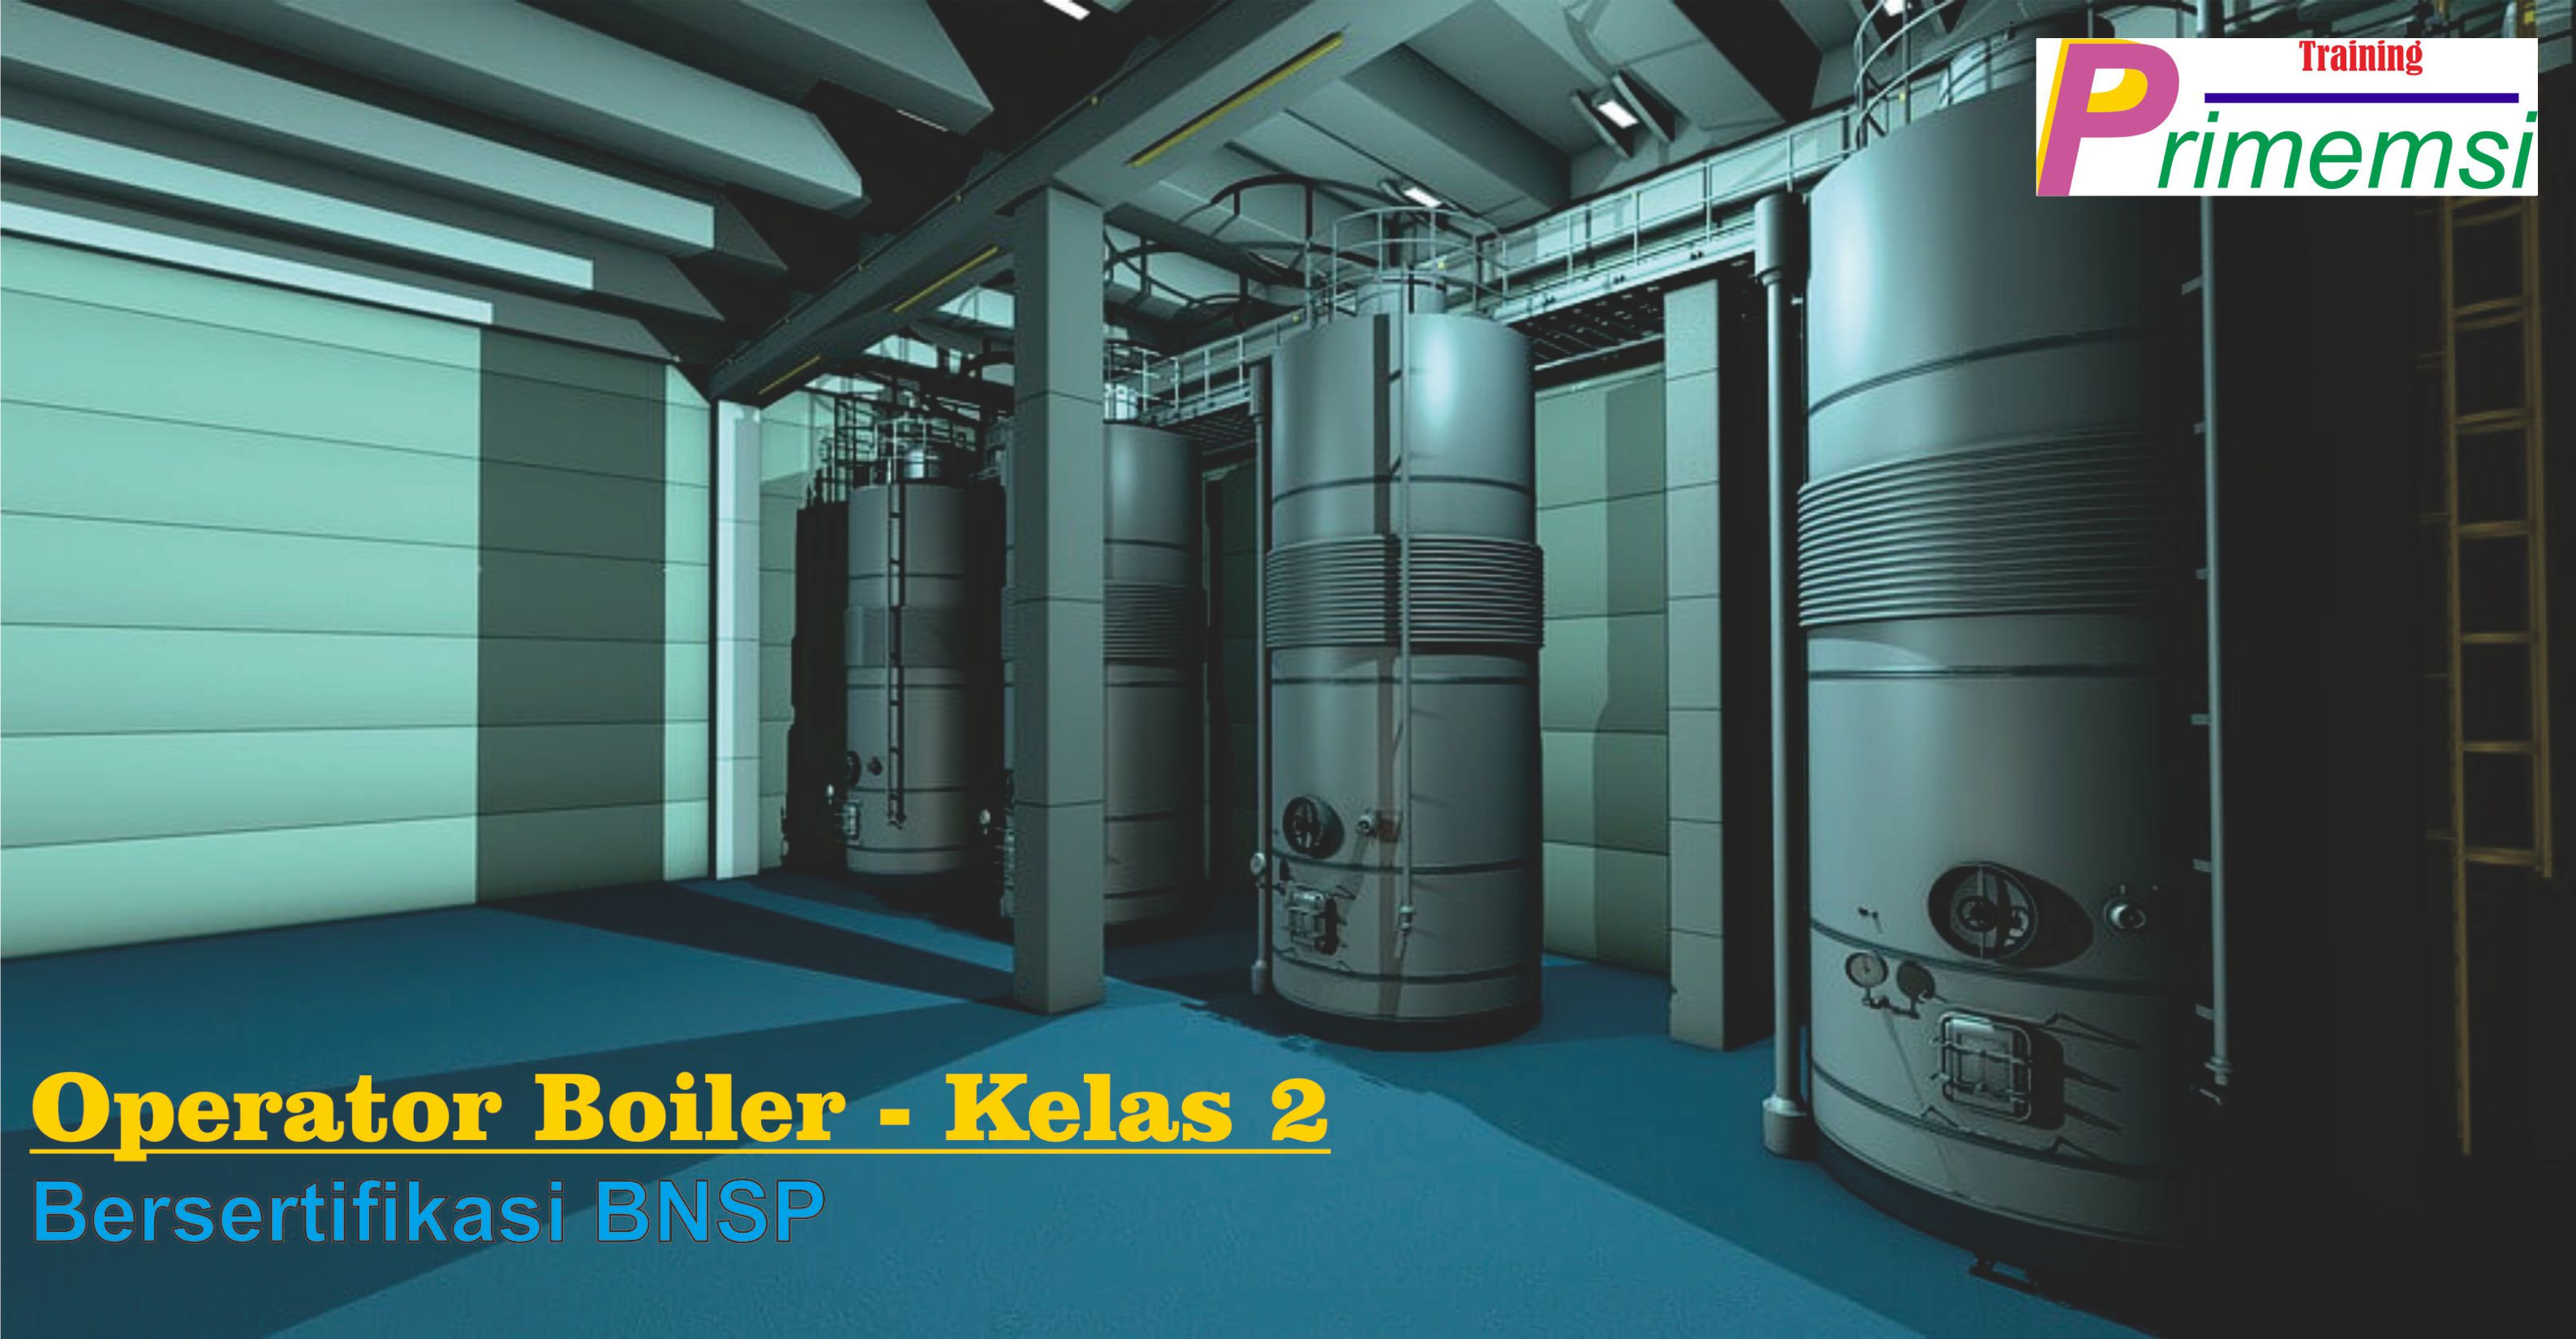 training operator boiler kelas 2 bersertifikasi bnsp